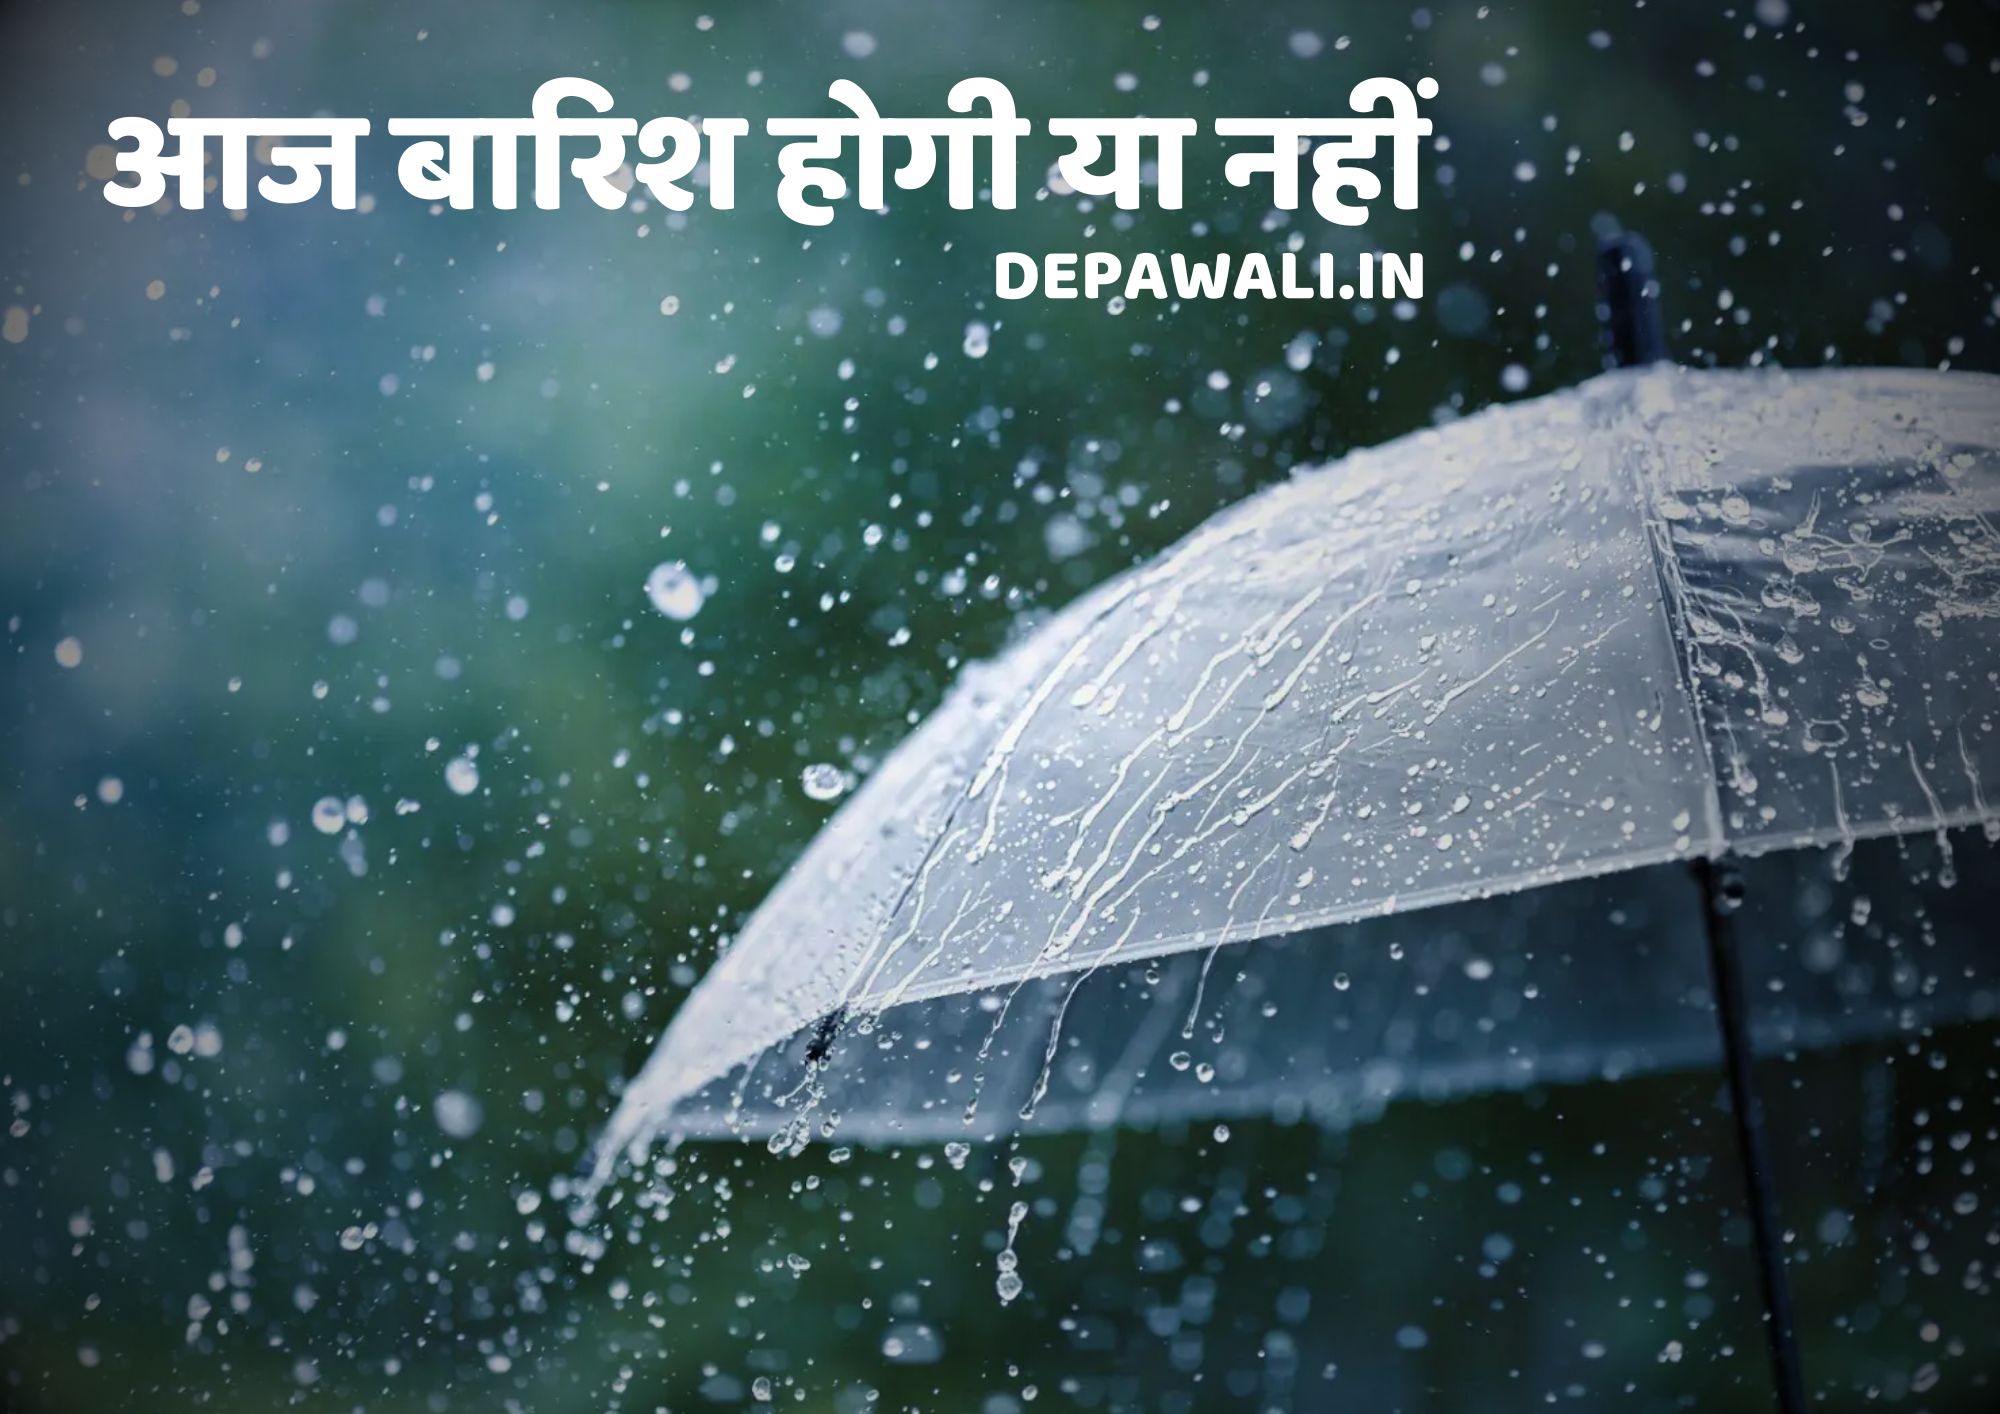 क्या आज बारिश होगी या नहीं (गूगल आज बारिश होगी क्या) - Goole Aaj Barish Hoga (Today Rain) - Kya Aaj Barish Hogi Ya Nahin